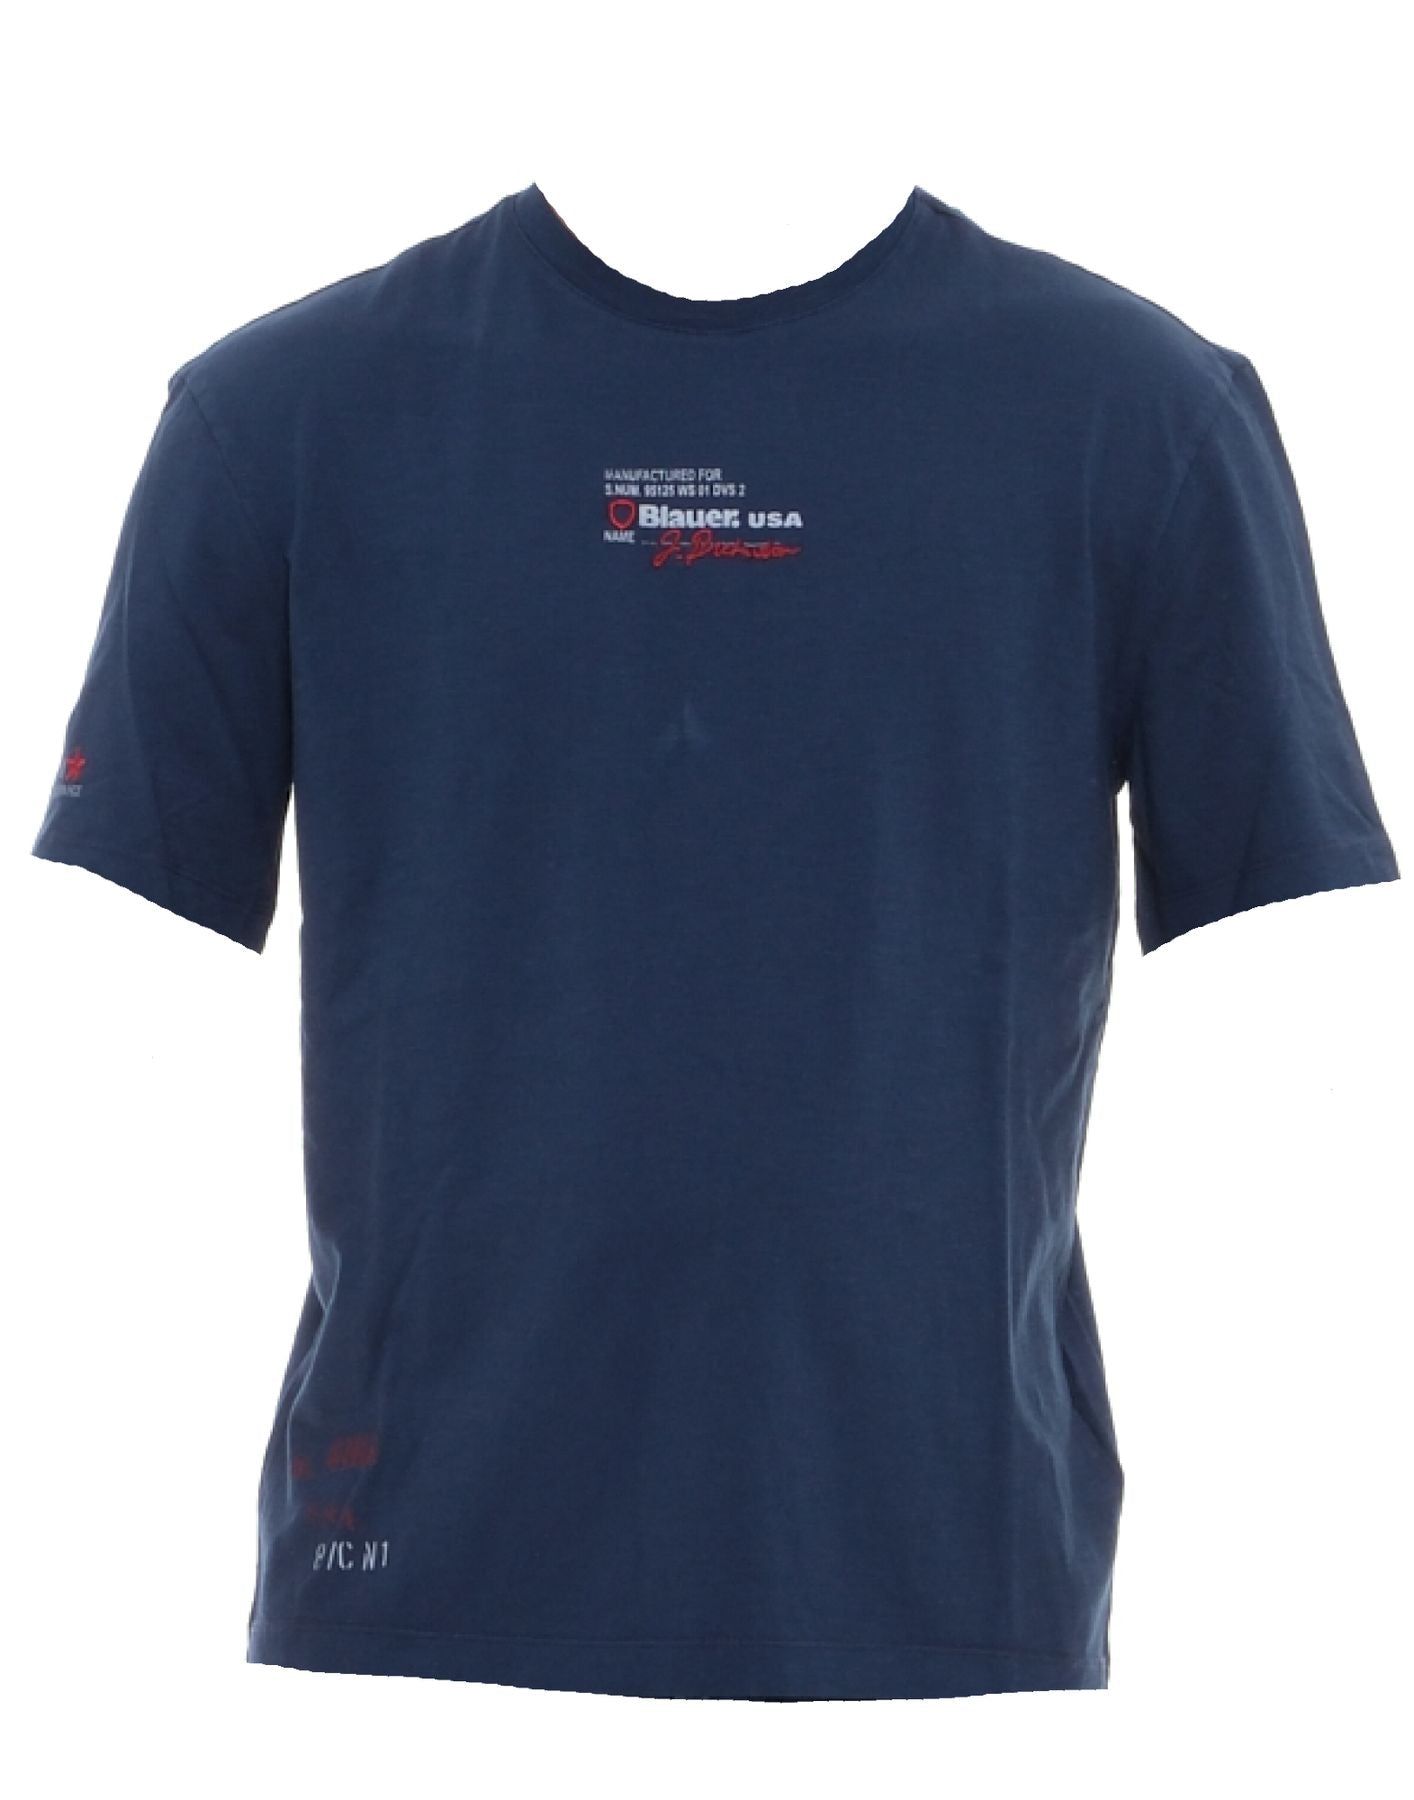 T-Shirt für Mann 24Sbluh02354 005695 971 Blauer